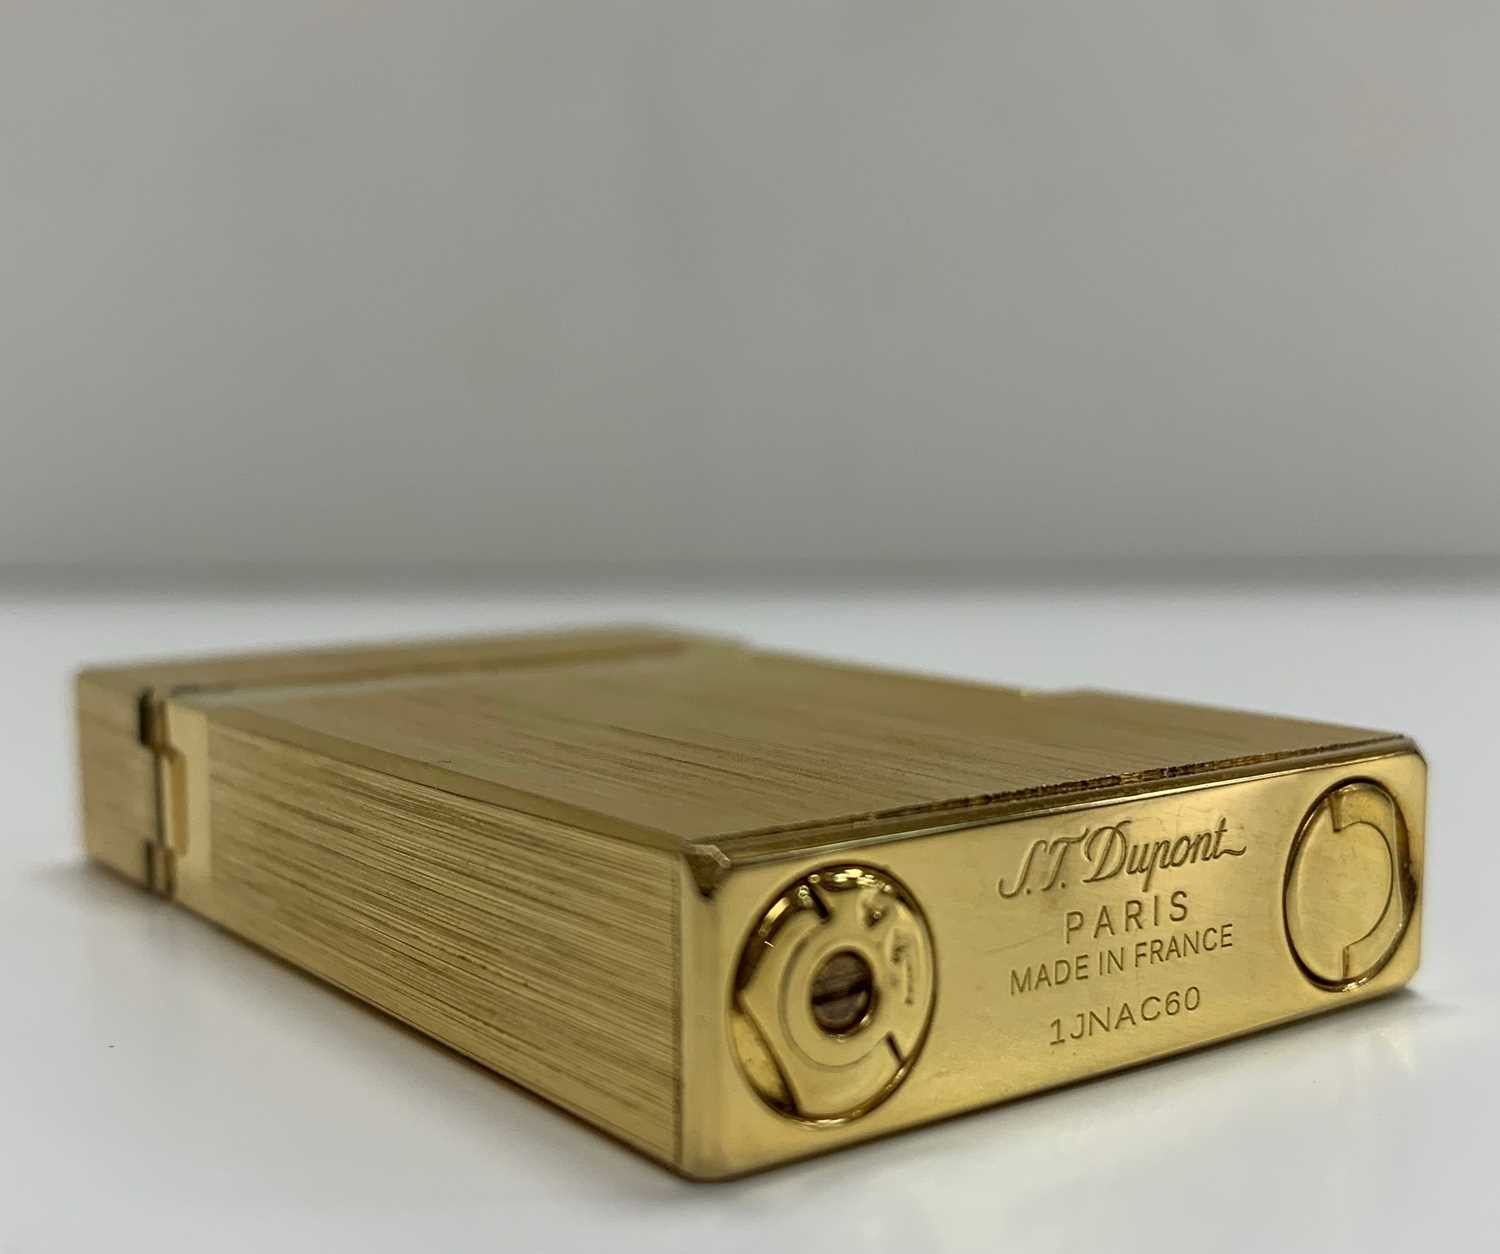 S.T. DUPONT 'LIGNE 2' BRUSHED GOLD PLATED LIGHTER, engraved S.T. Dupont Paris, serial number - Image 4 of 4